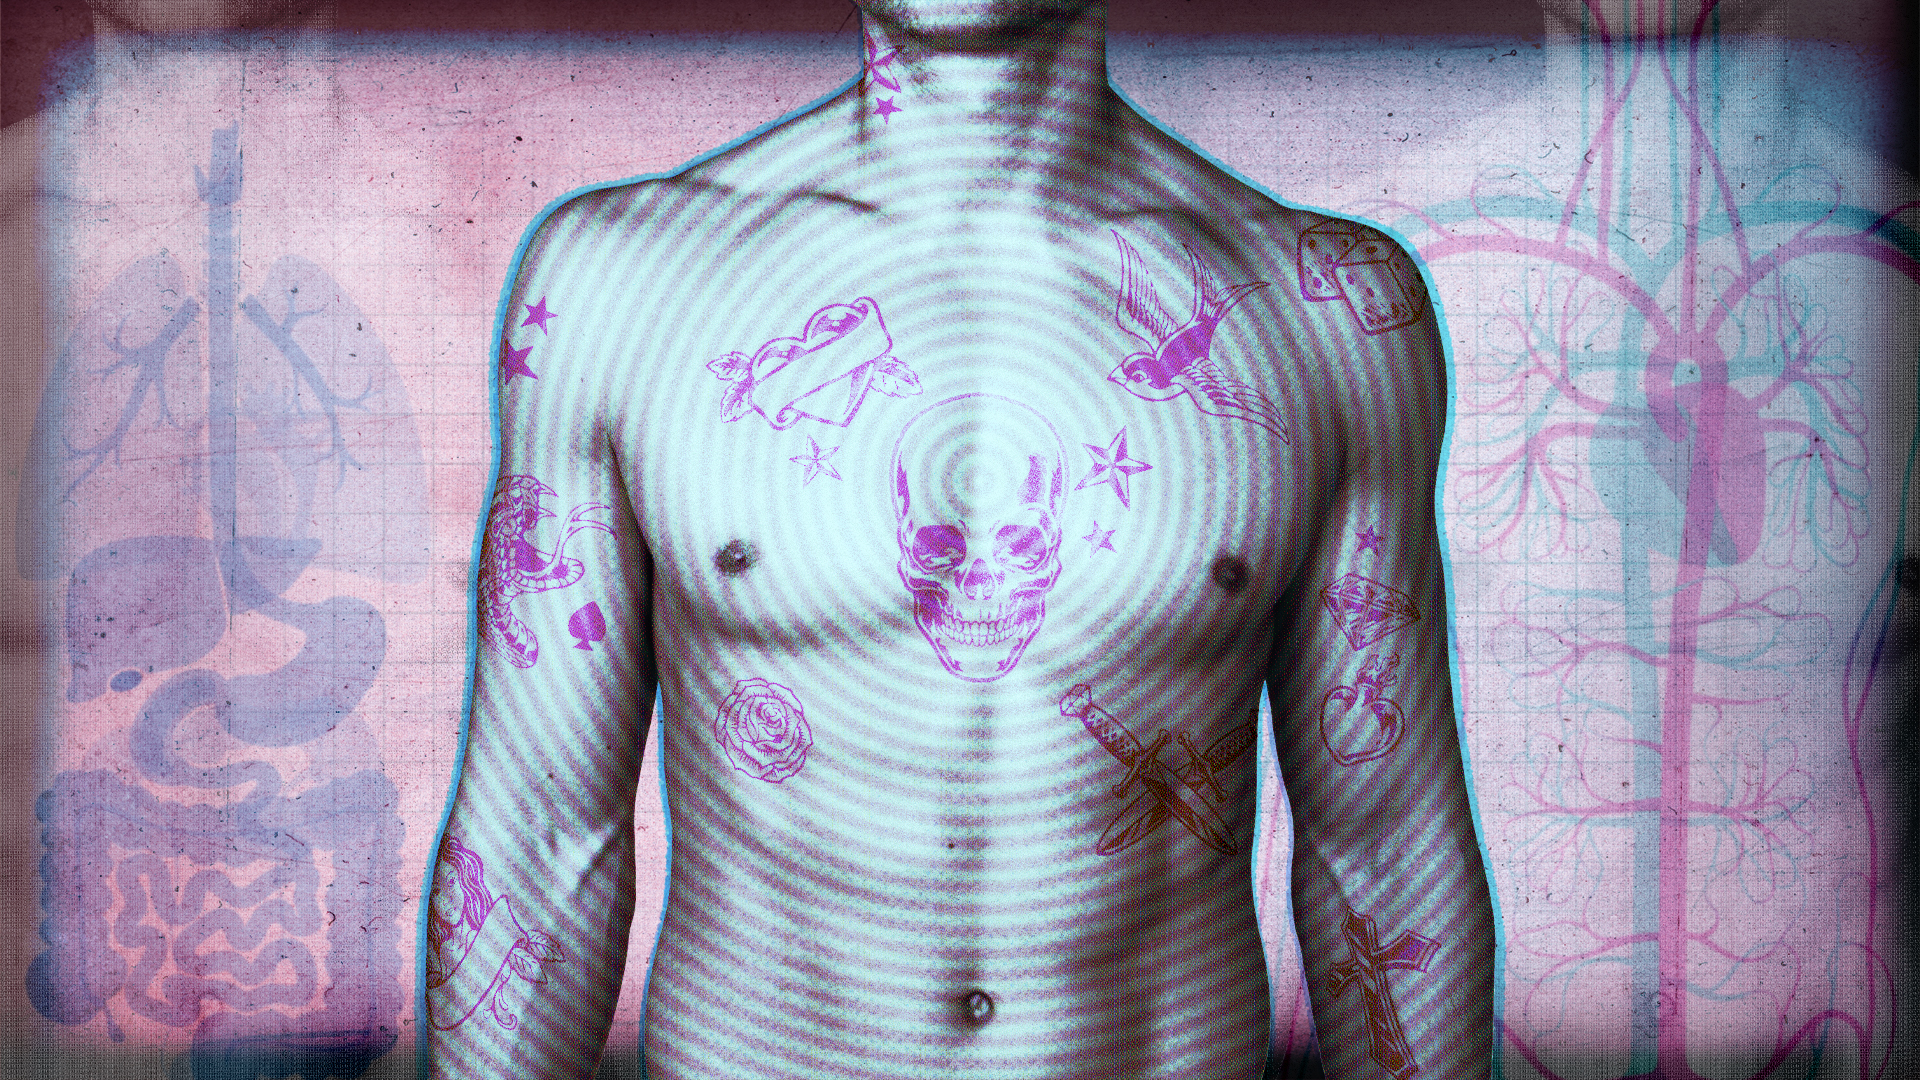 Tattooed torso